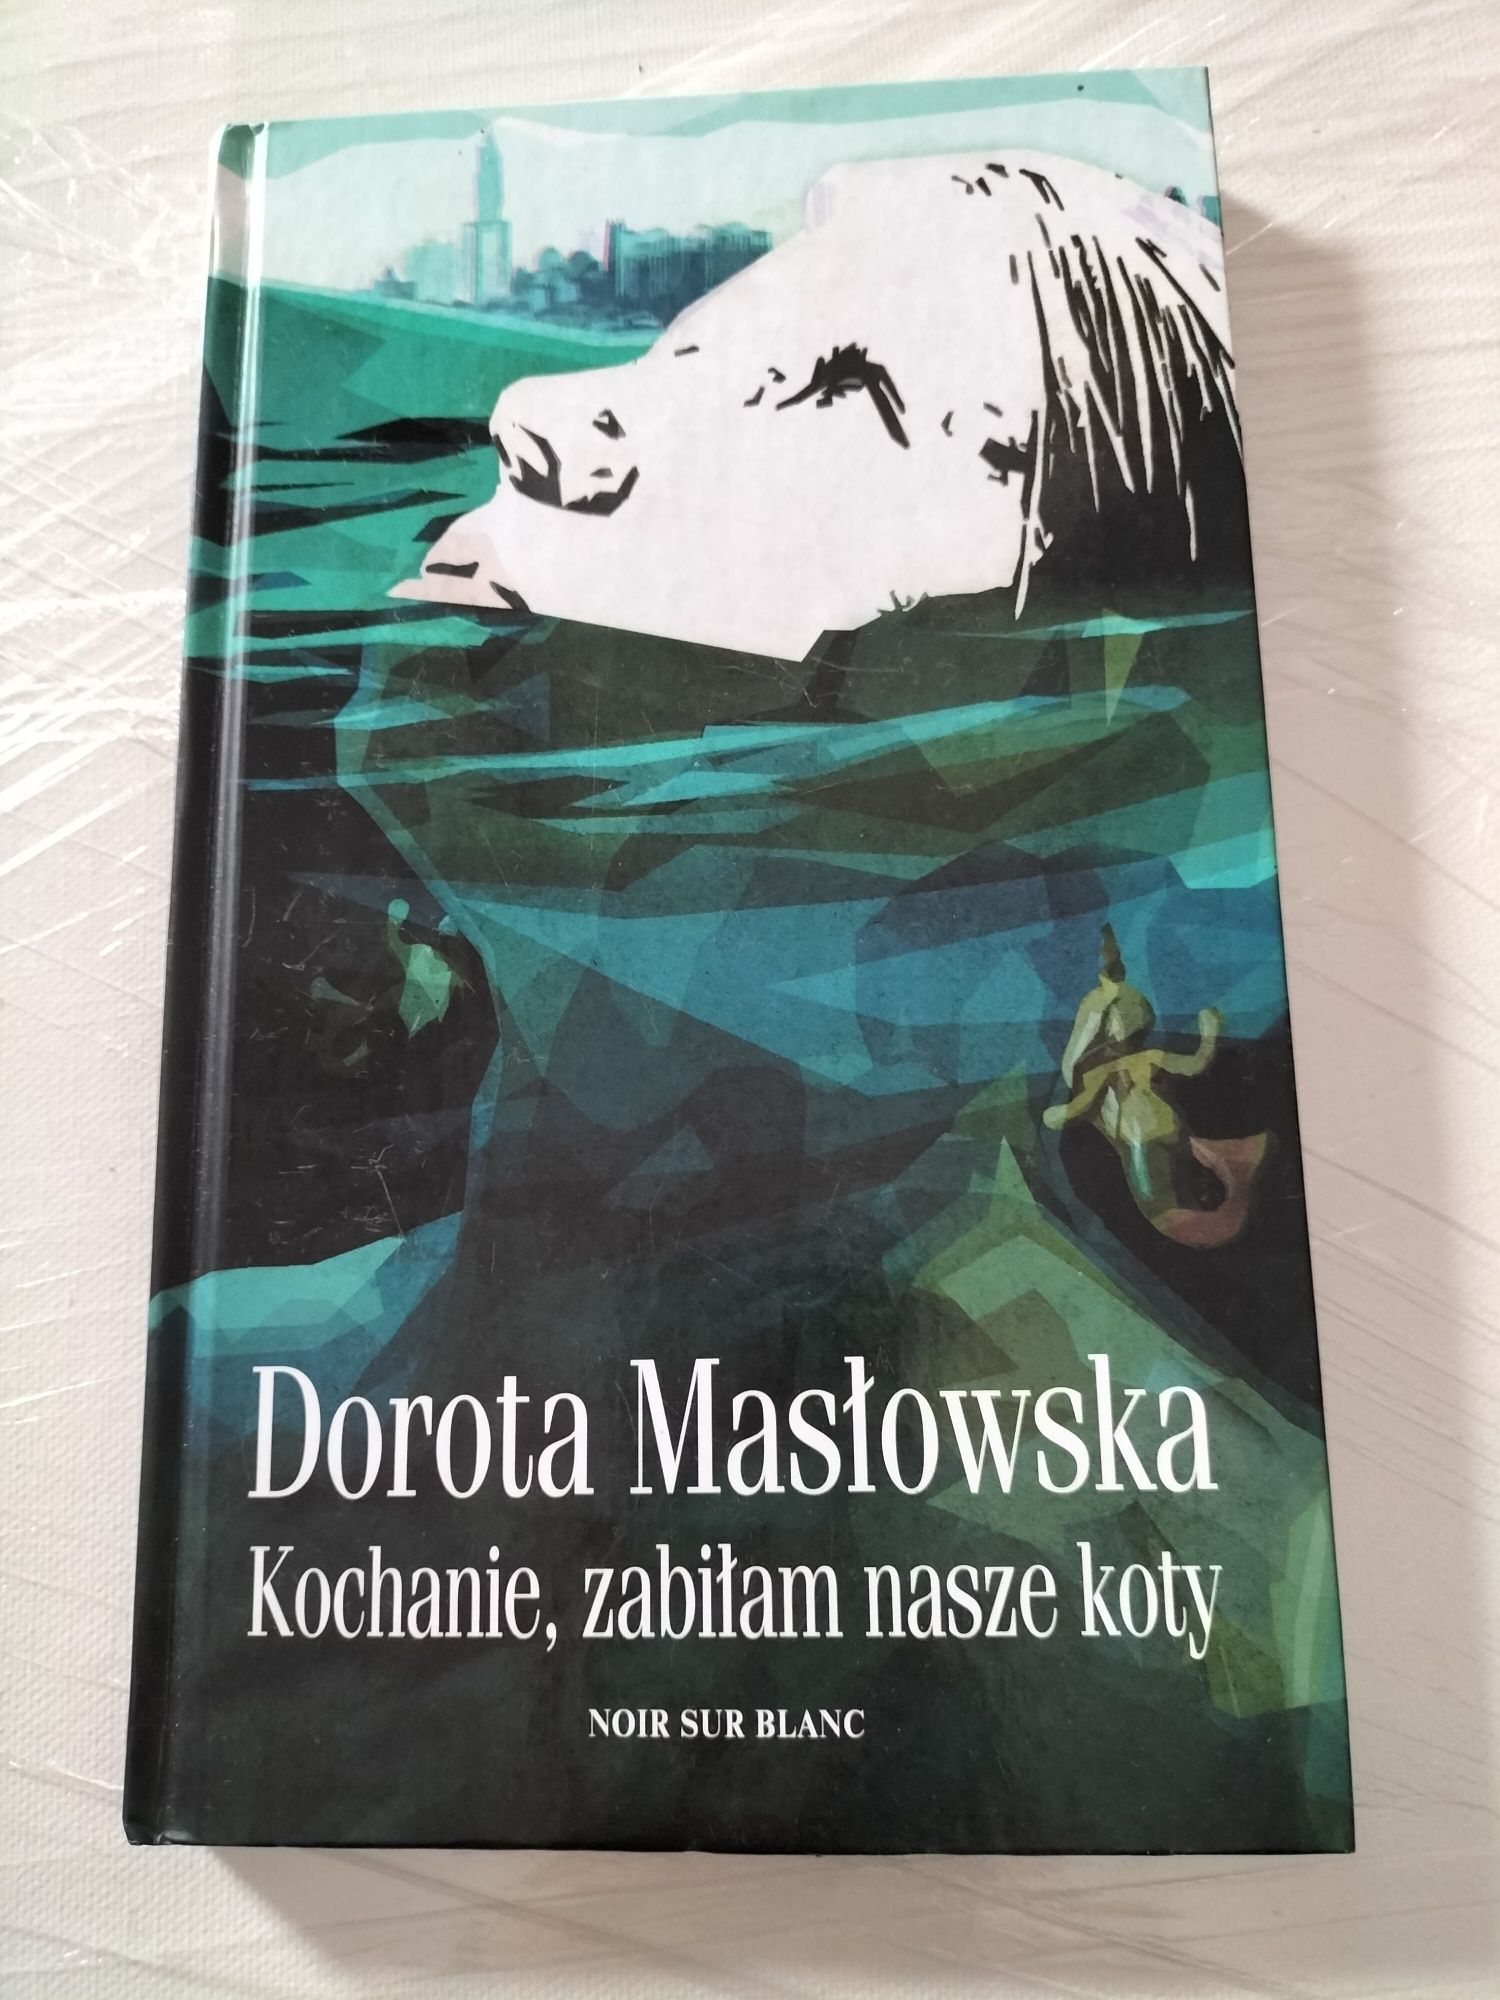 Książka Doroty Masłowskiej, Kochanie, zabiłam nasze koty